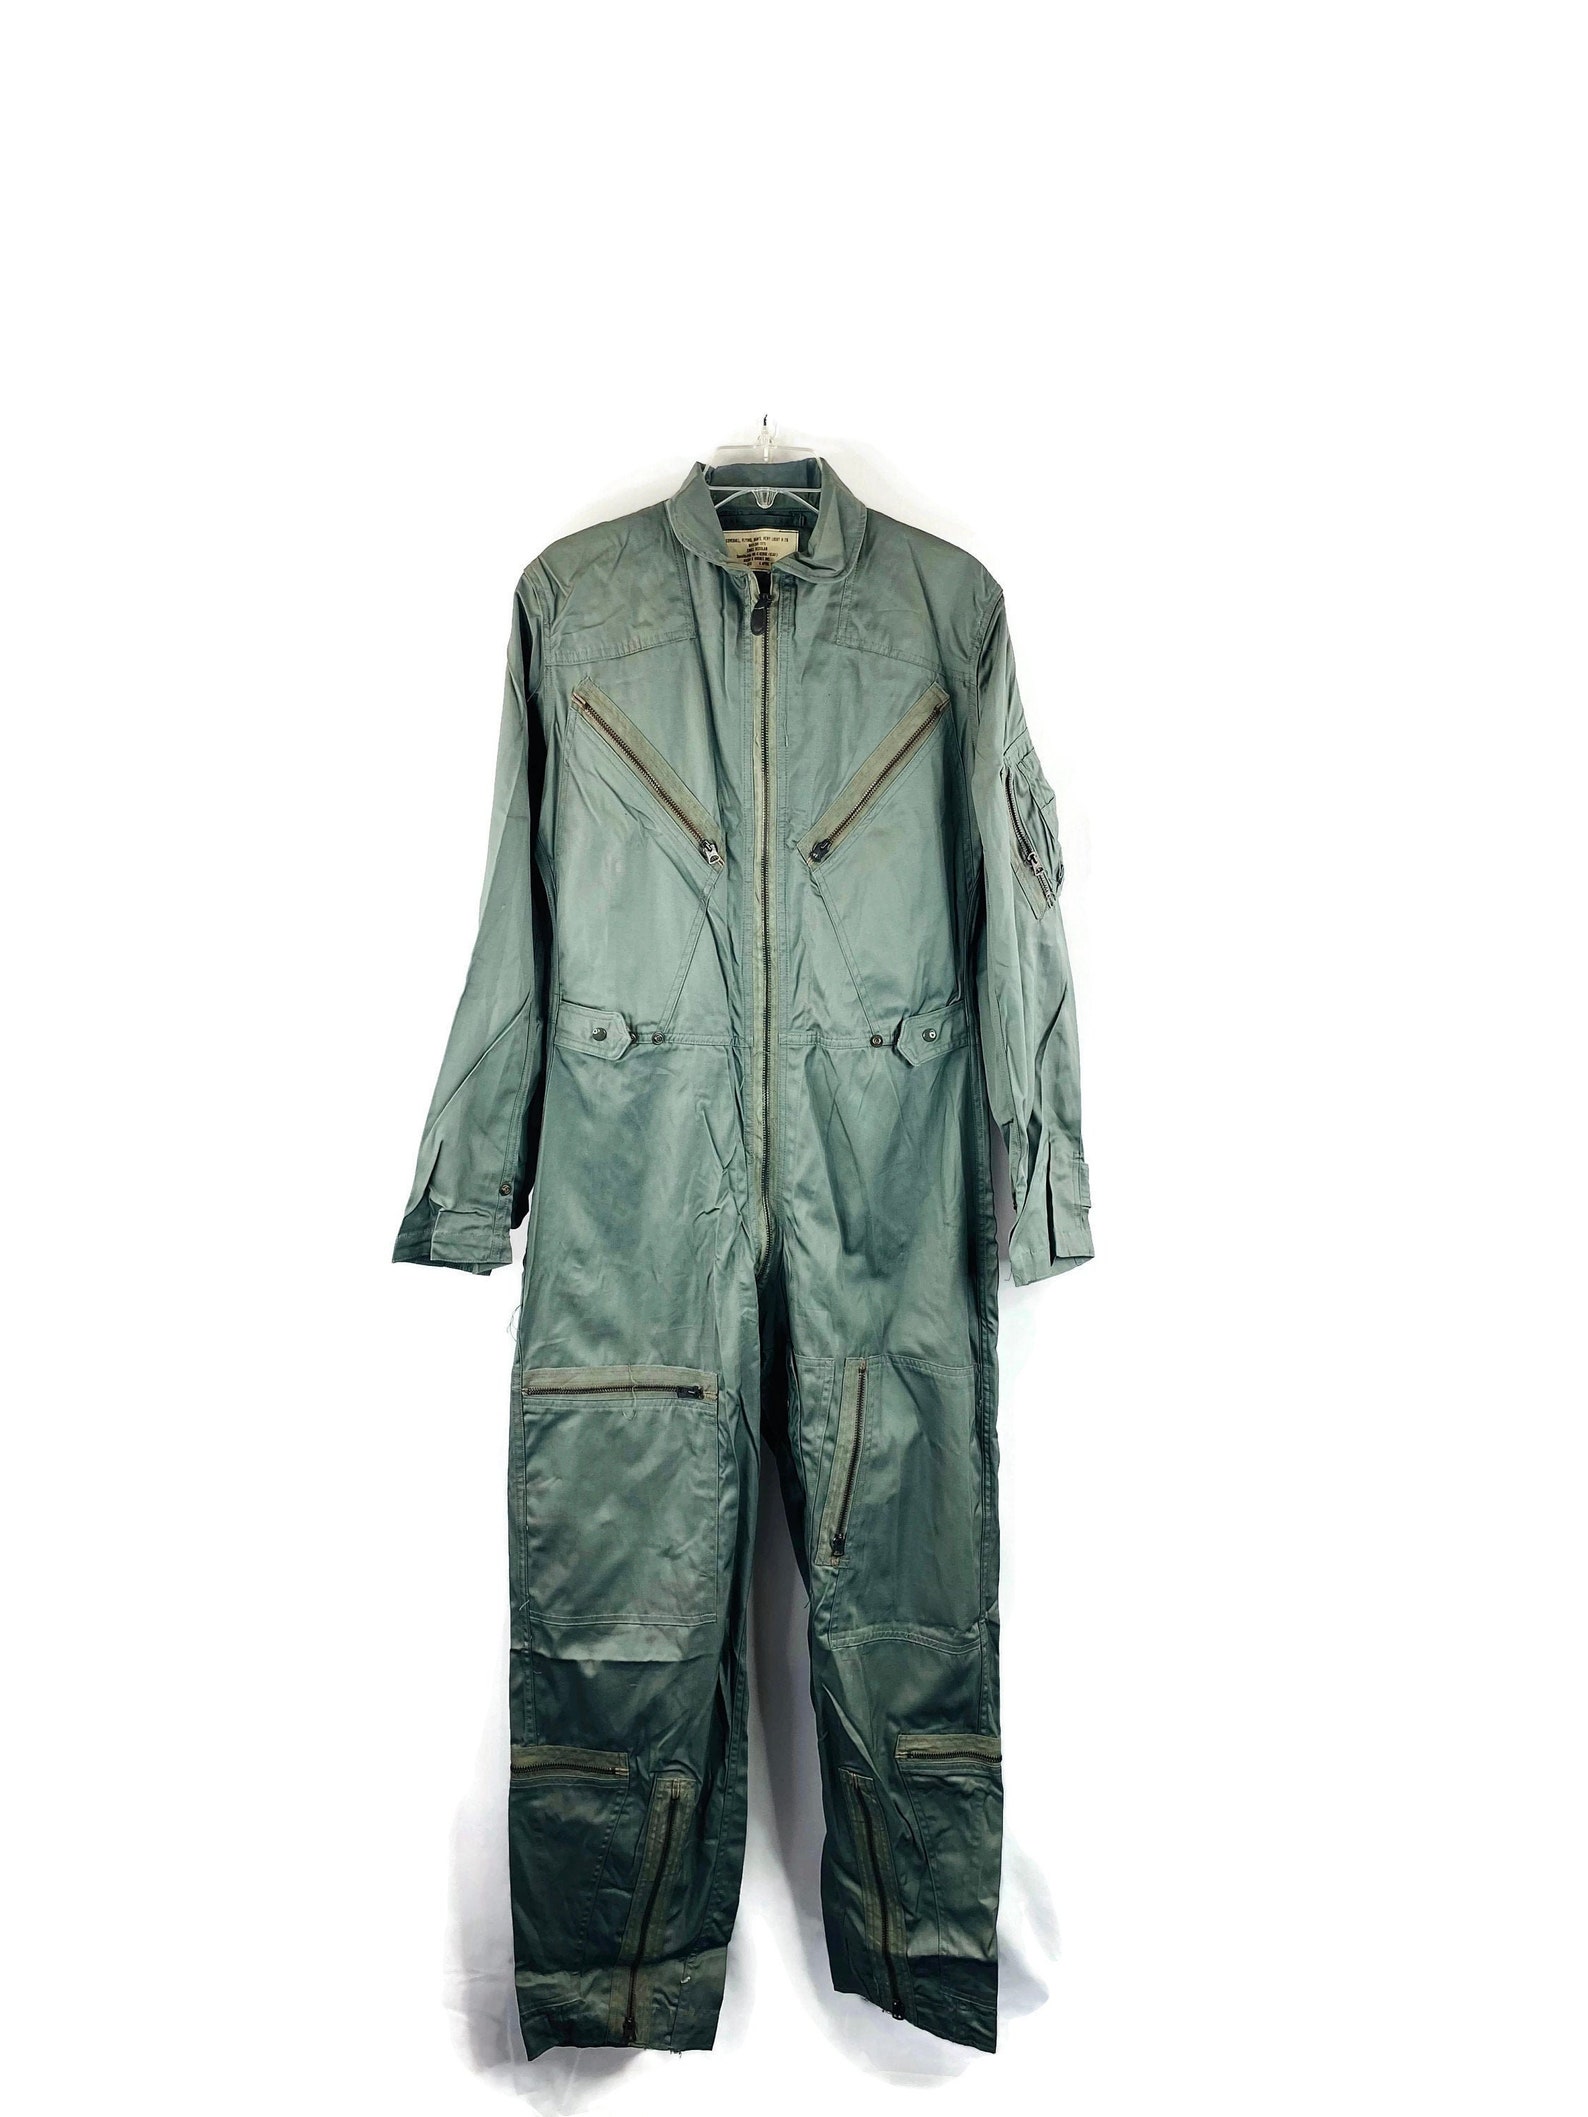 Mens Vintage 1966 Vietnam Flight Suit Size: S | Etsy